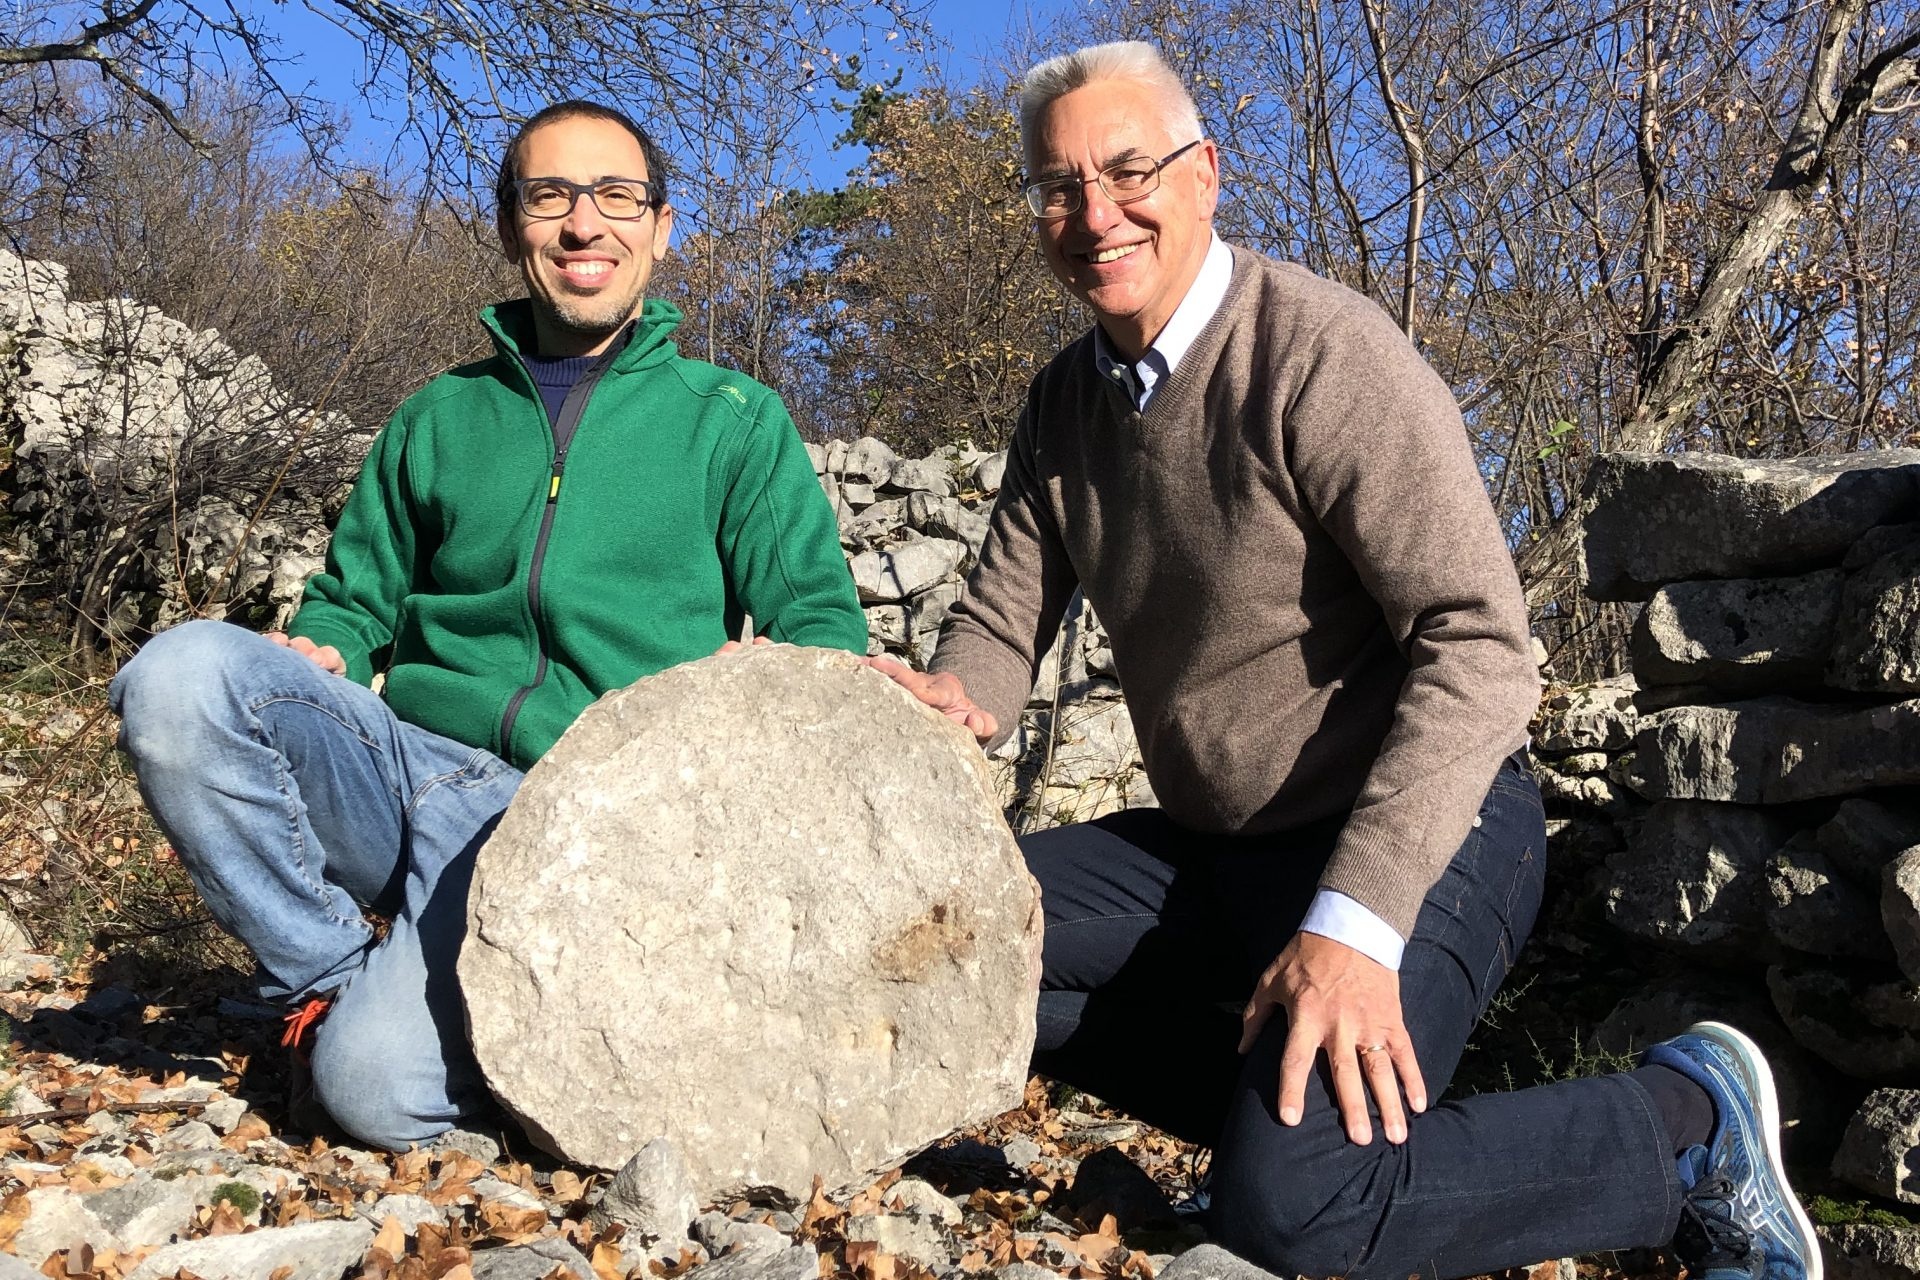  Археологът Федерико Бернардини и астрономът Паоло Моларо седят до каменния диск със звездната карта.